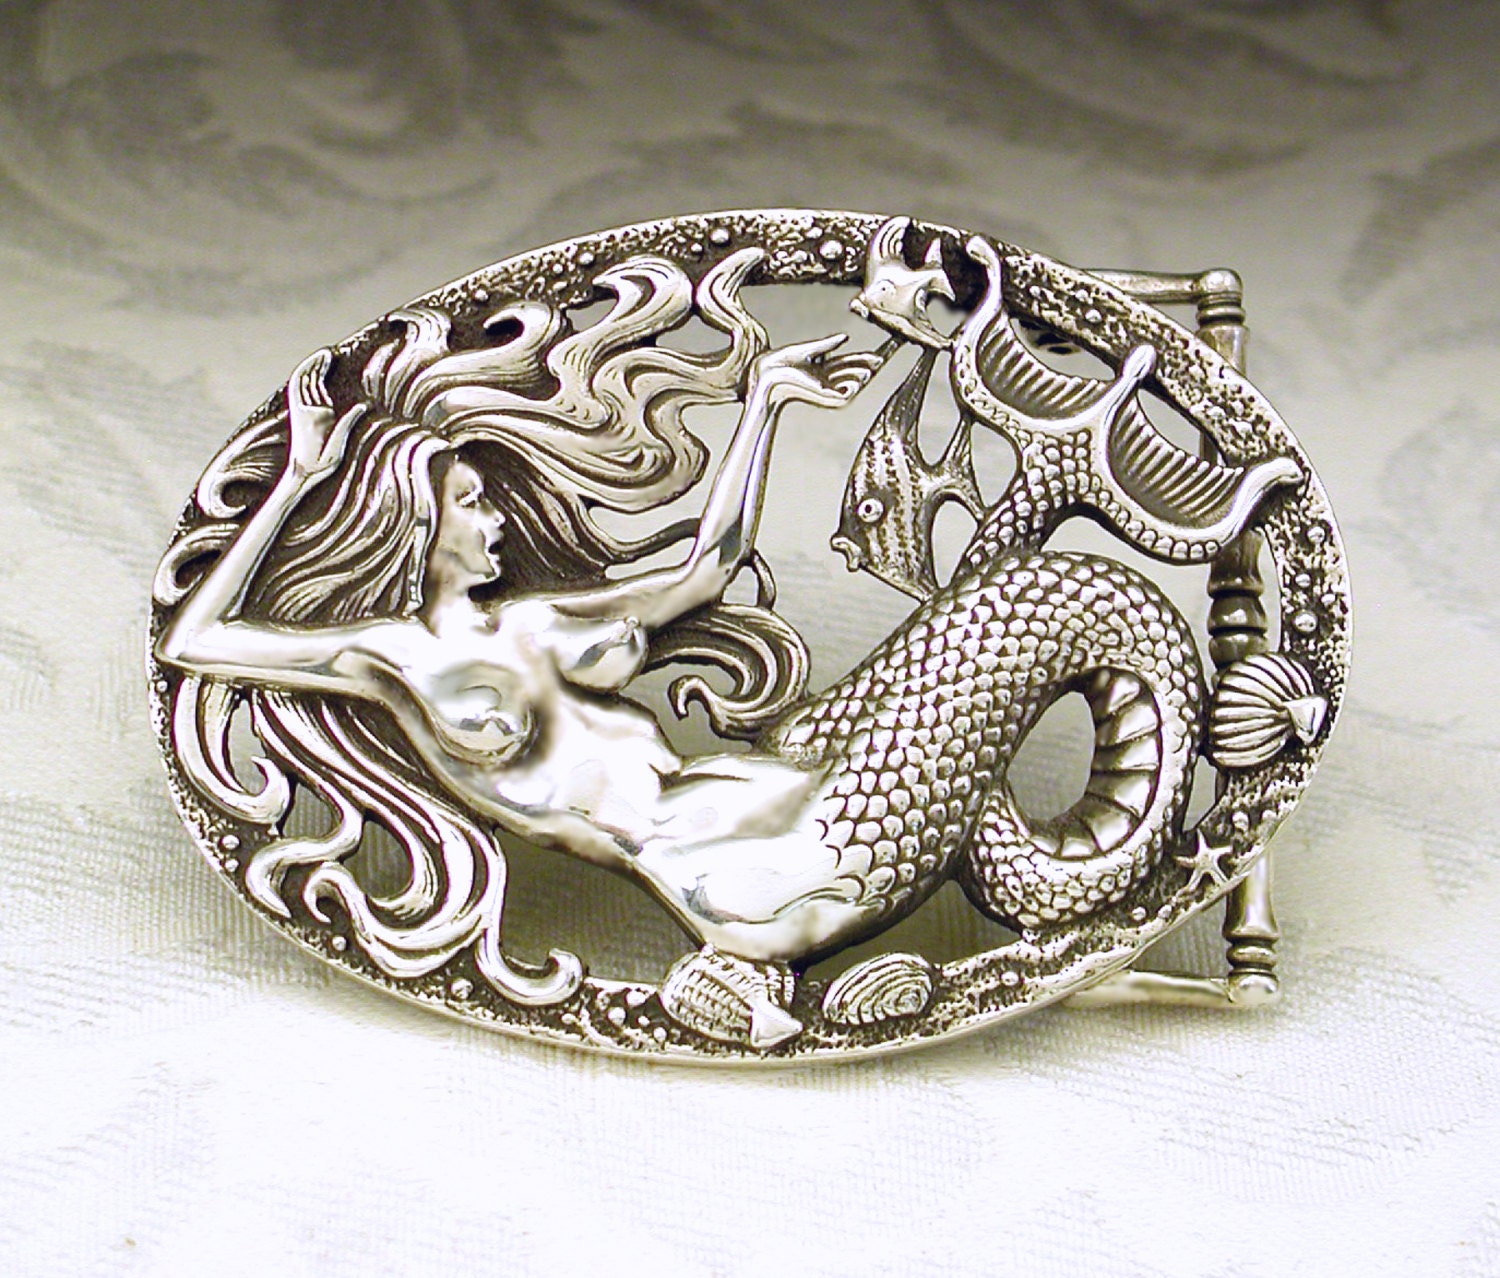 Mermaid Belt Buckle in Solid Sterling Silver 925